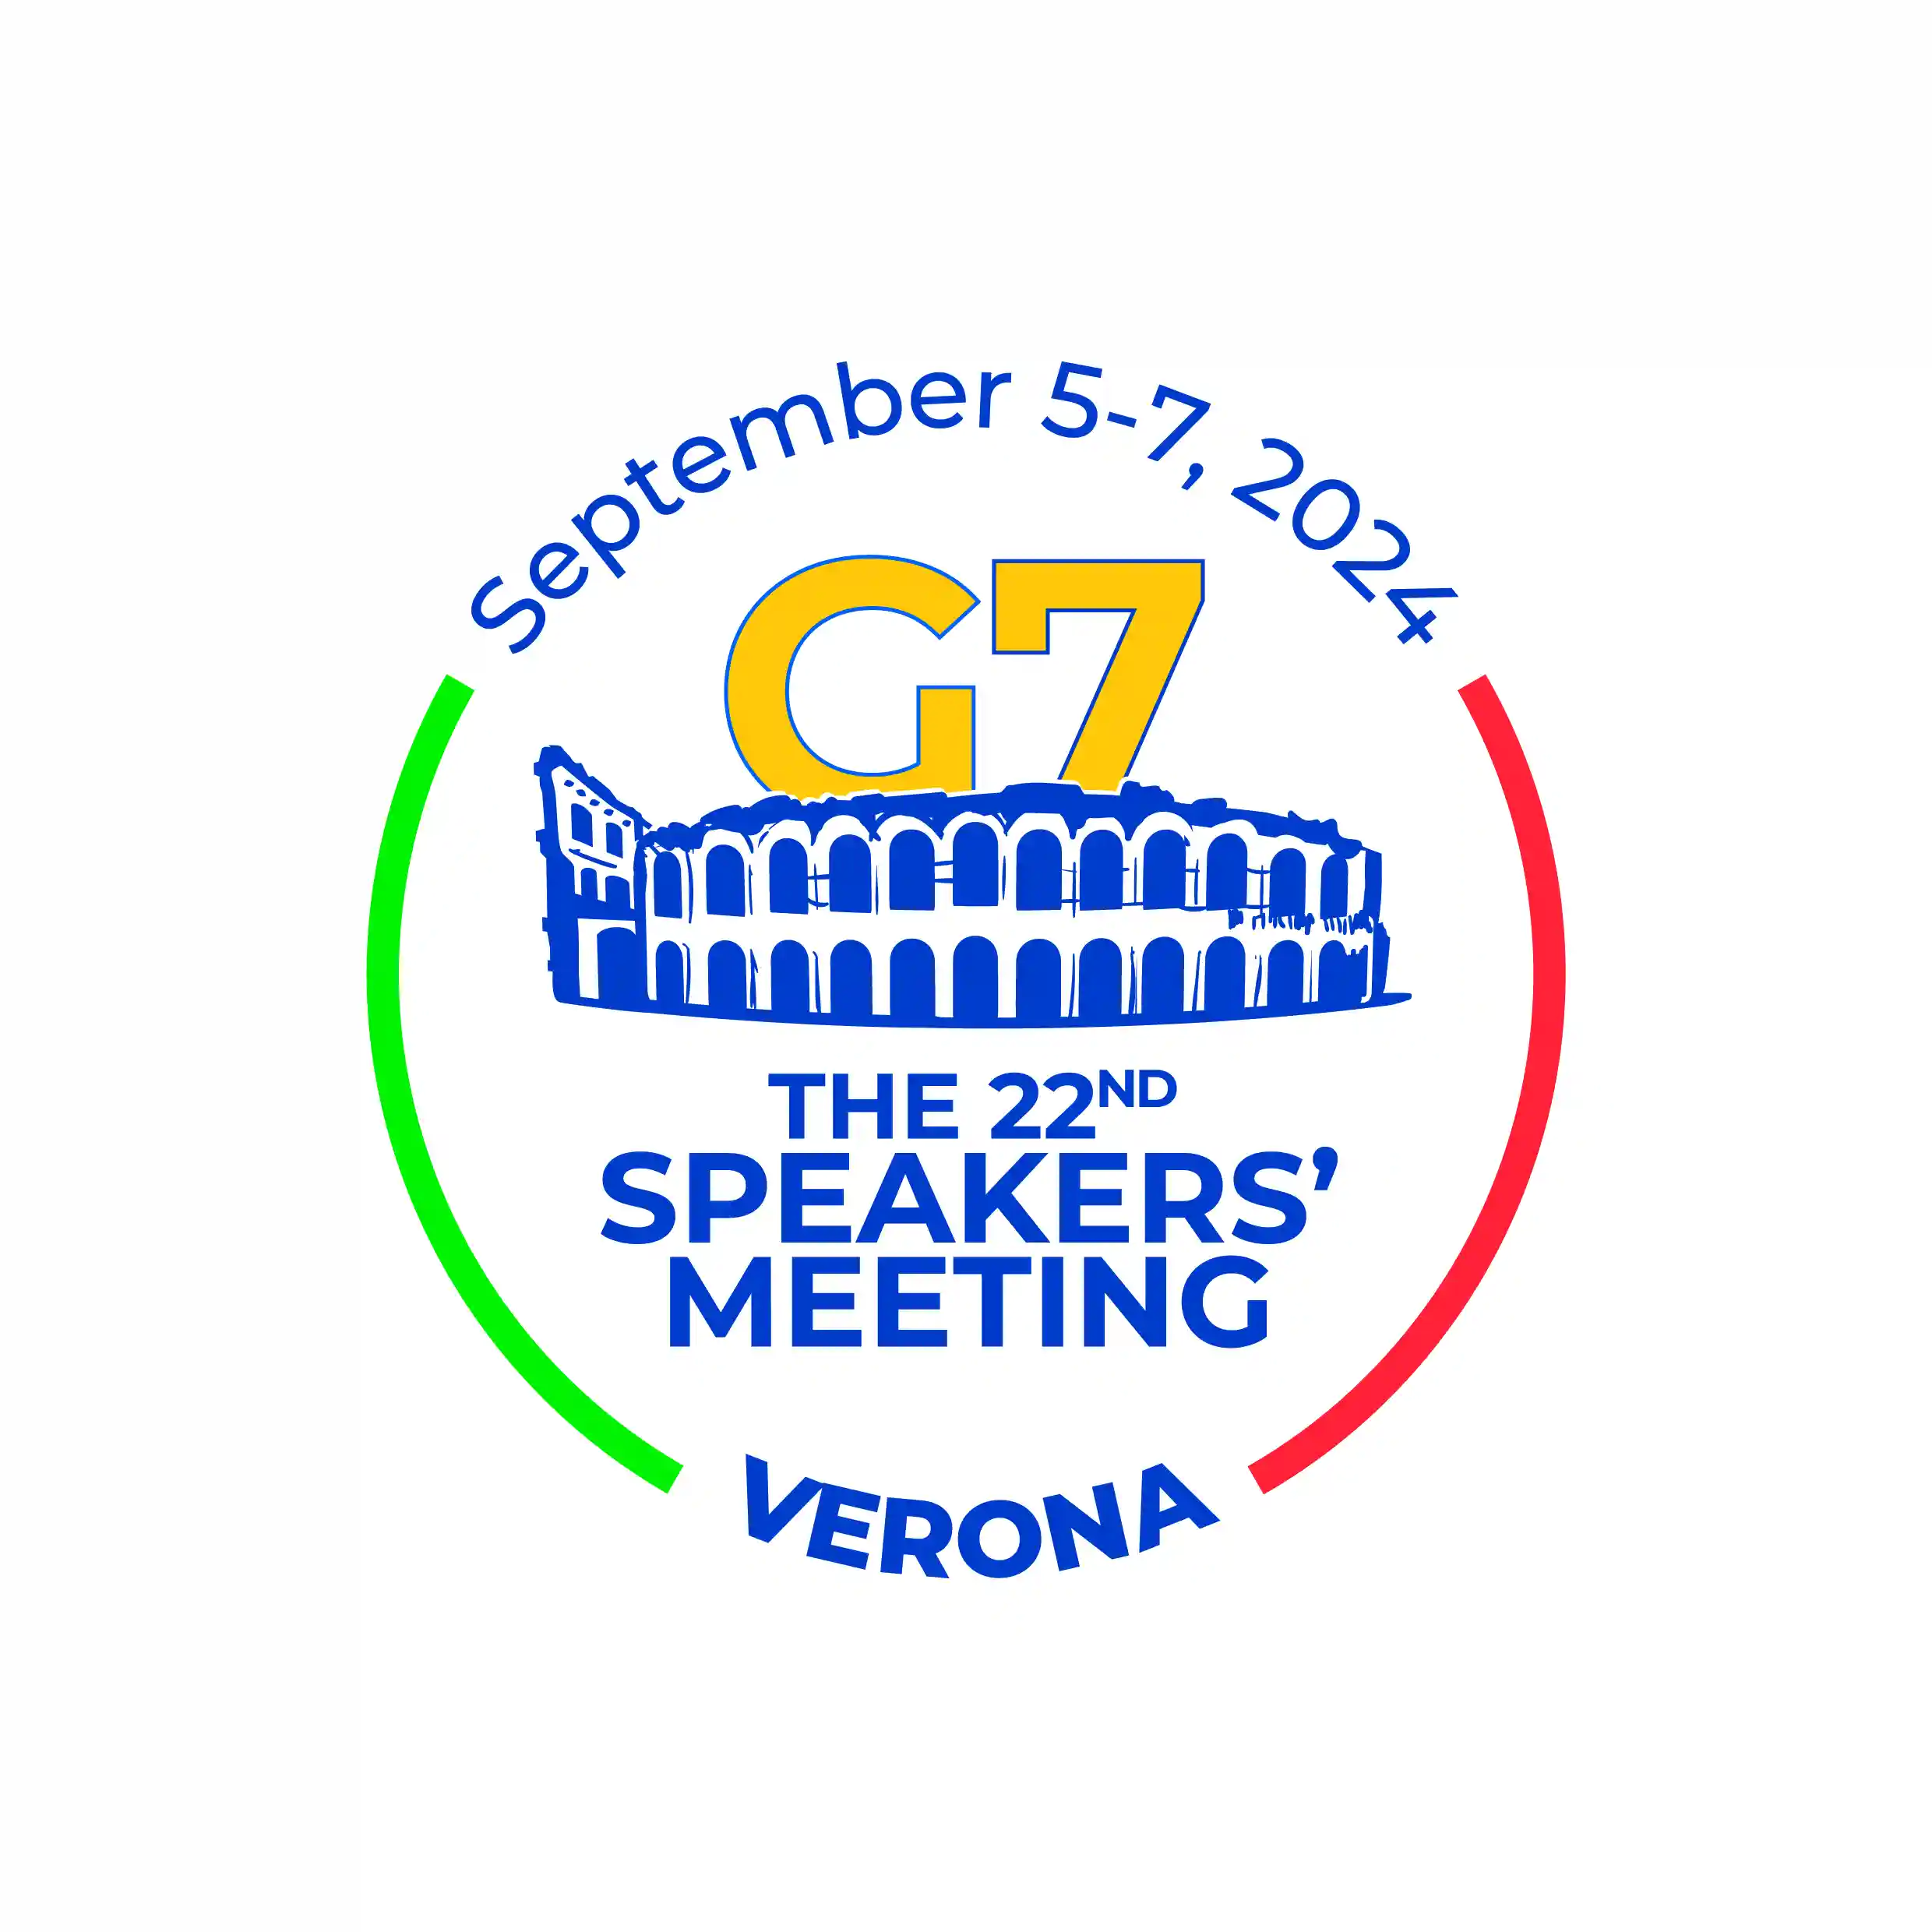 G7 Camere Basse a Verona, ecco il logo